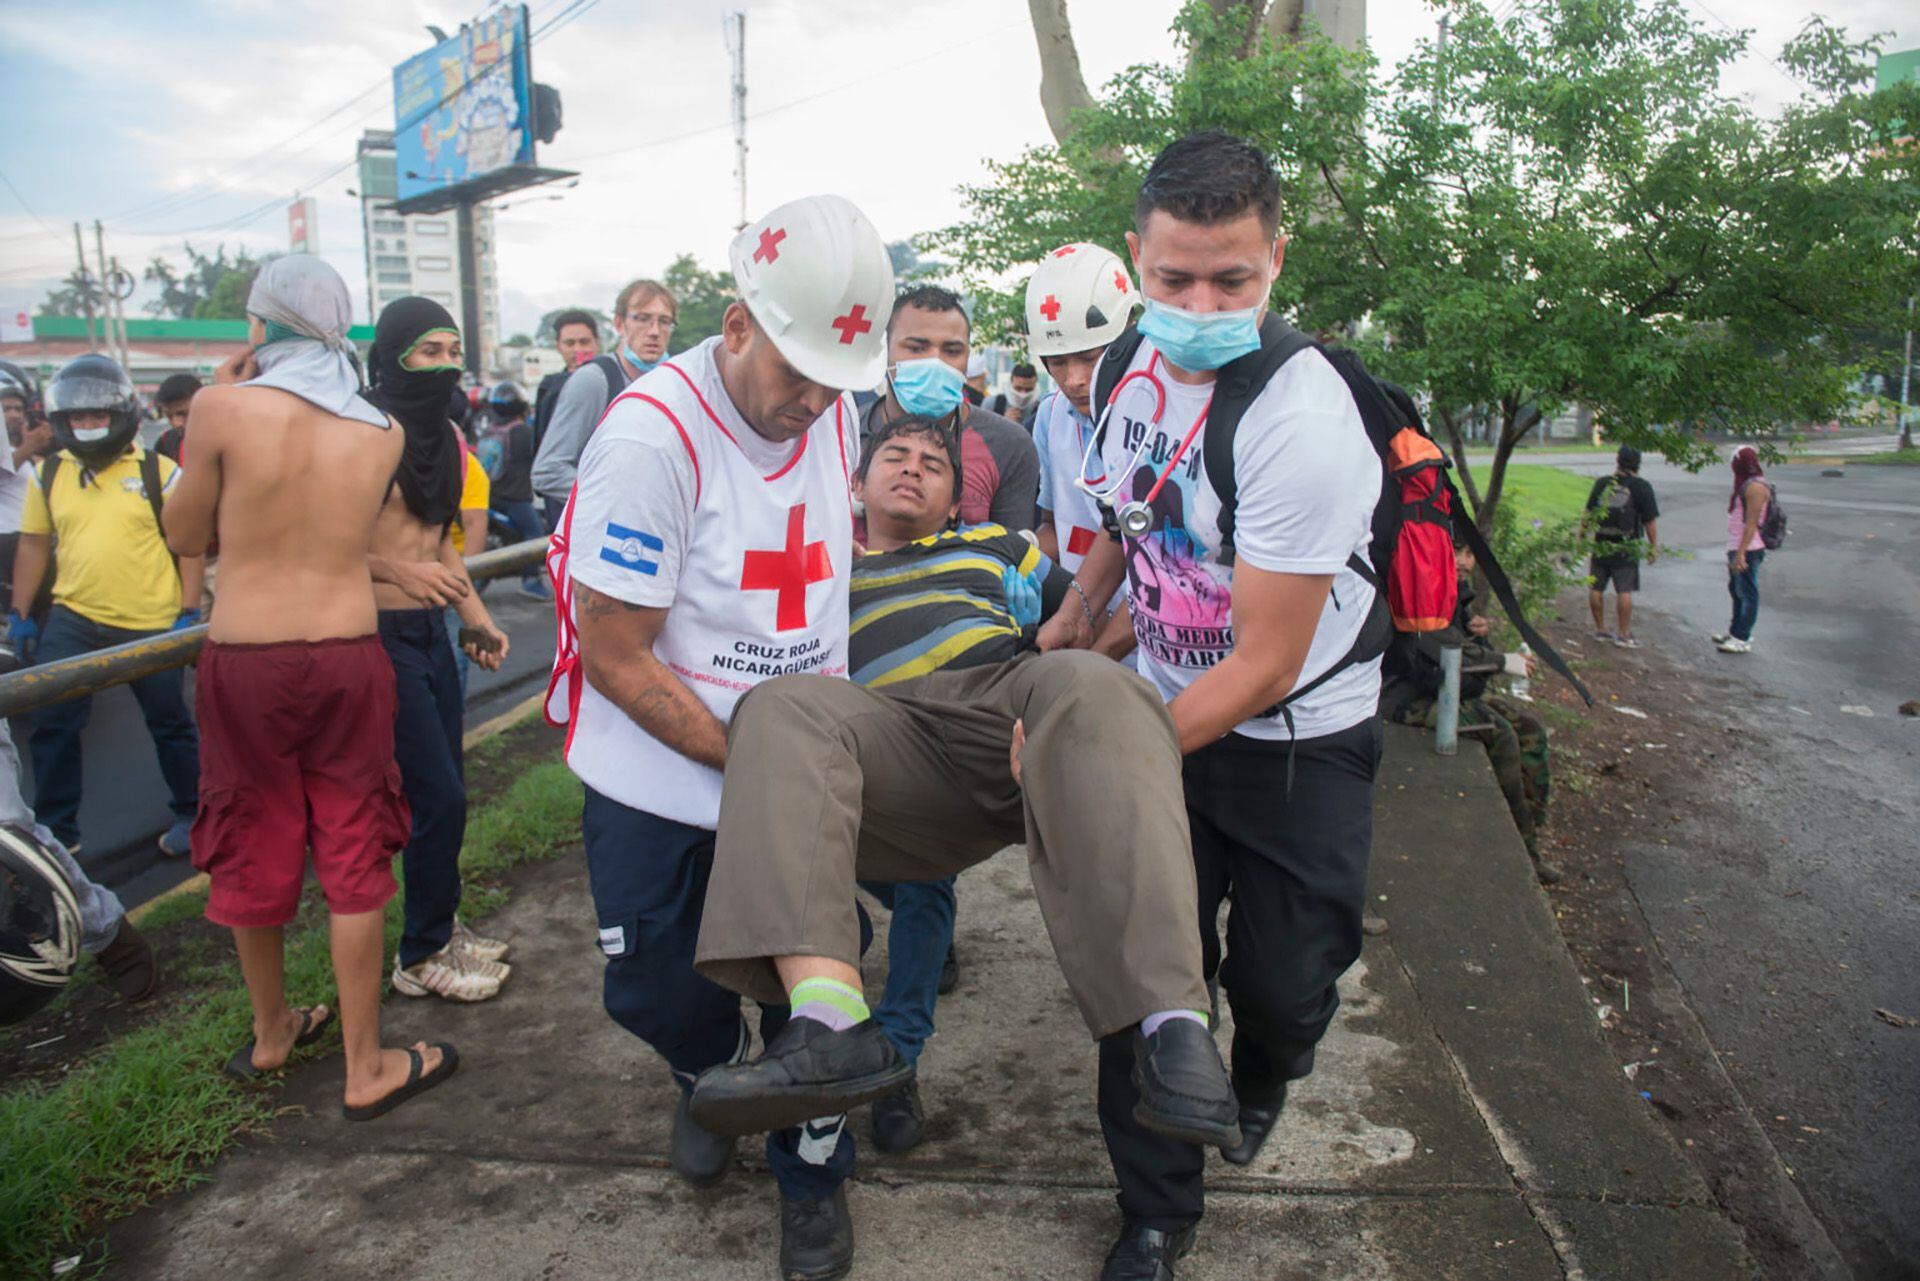 La Cruz Roja asistió a los heridos por la represión en 2018. El régimen de Daniel Ortega la acusa de apoyar la protesta. (Cortesía de La Prensa)